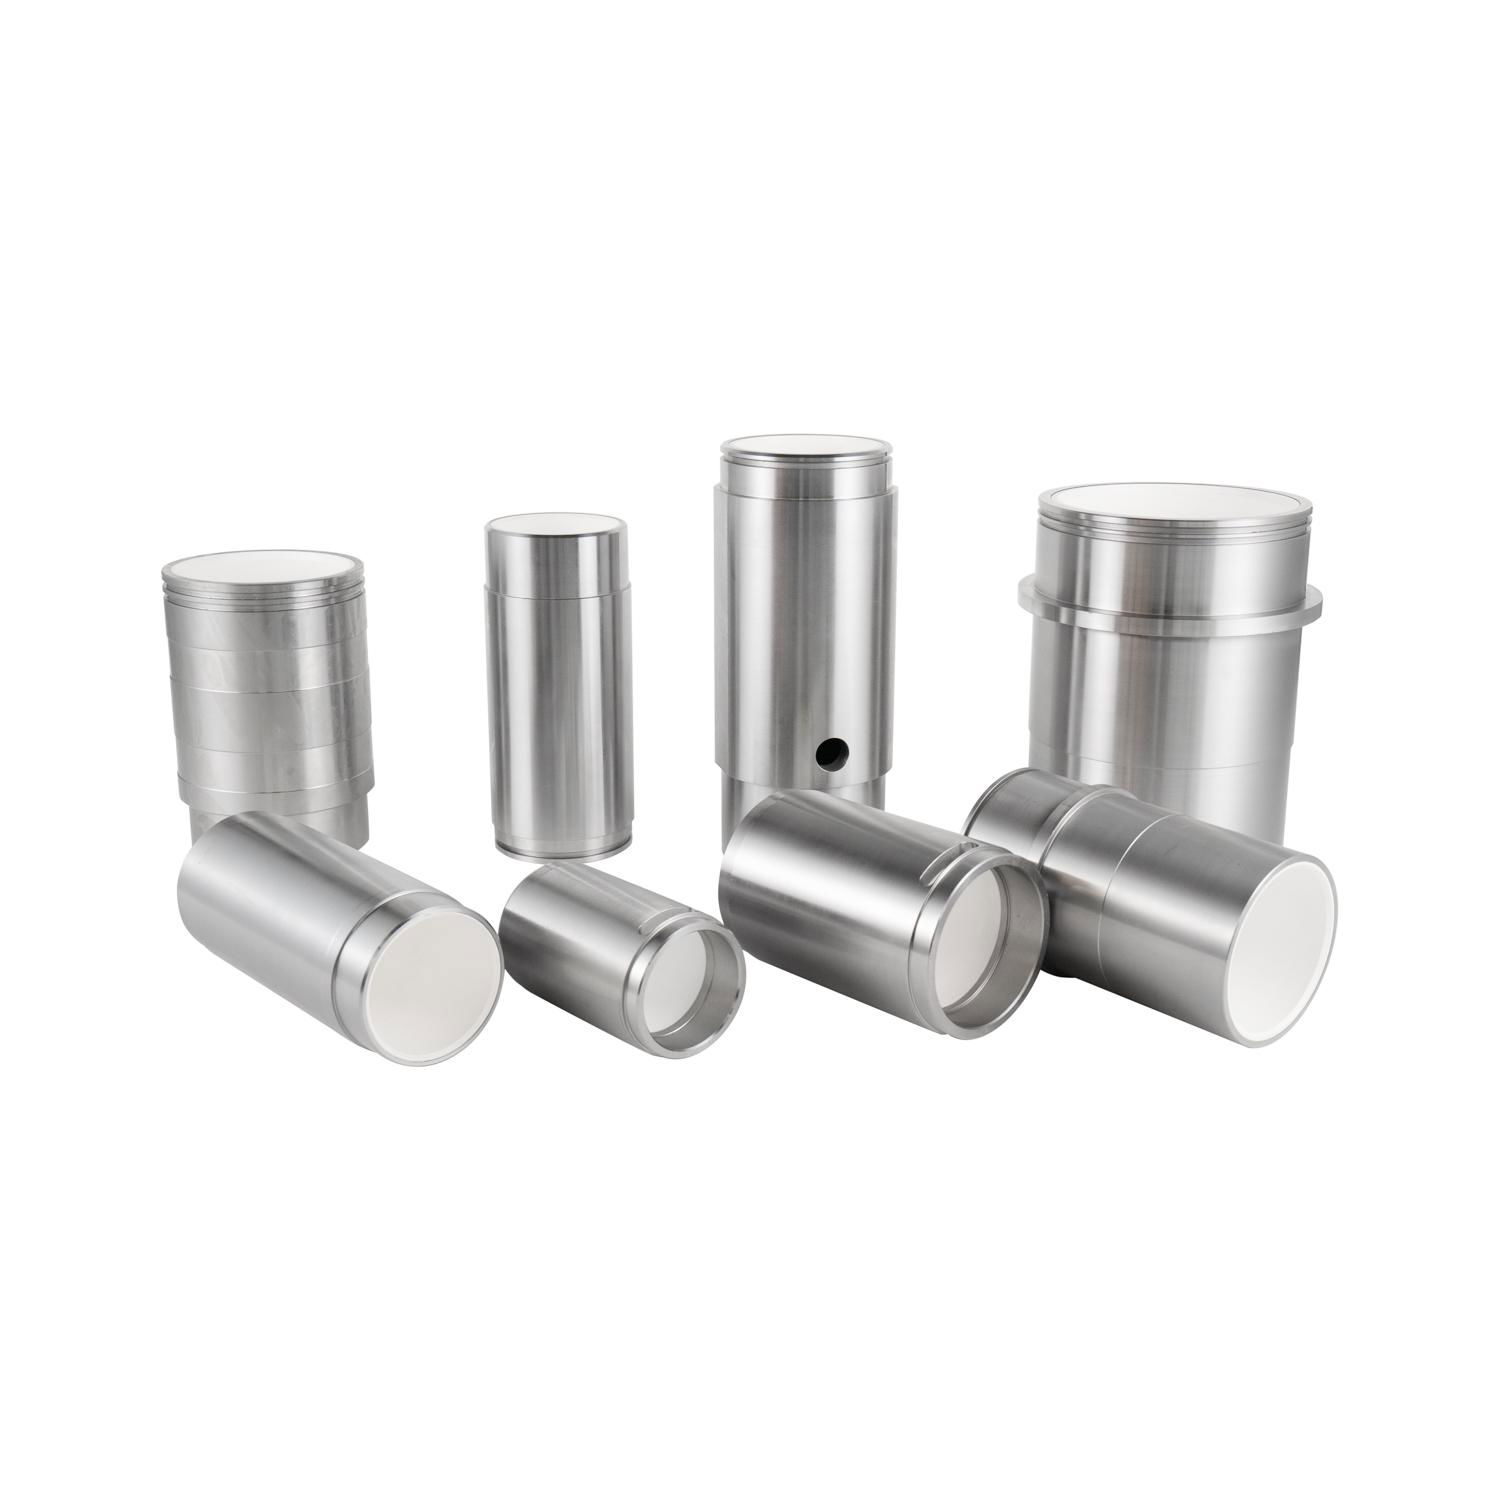 Fmc435 Ceramic Cylinder for Pump Models L1122 4